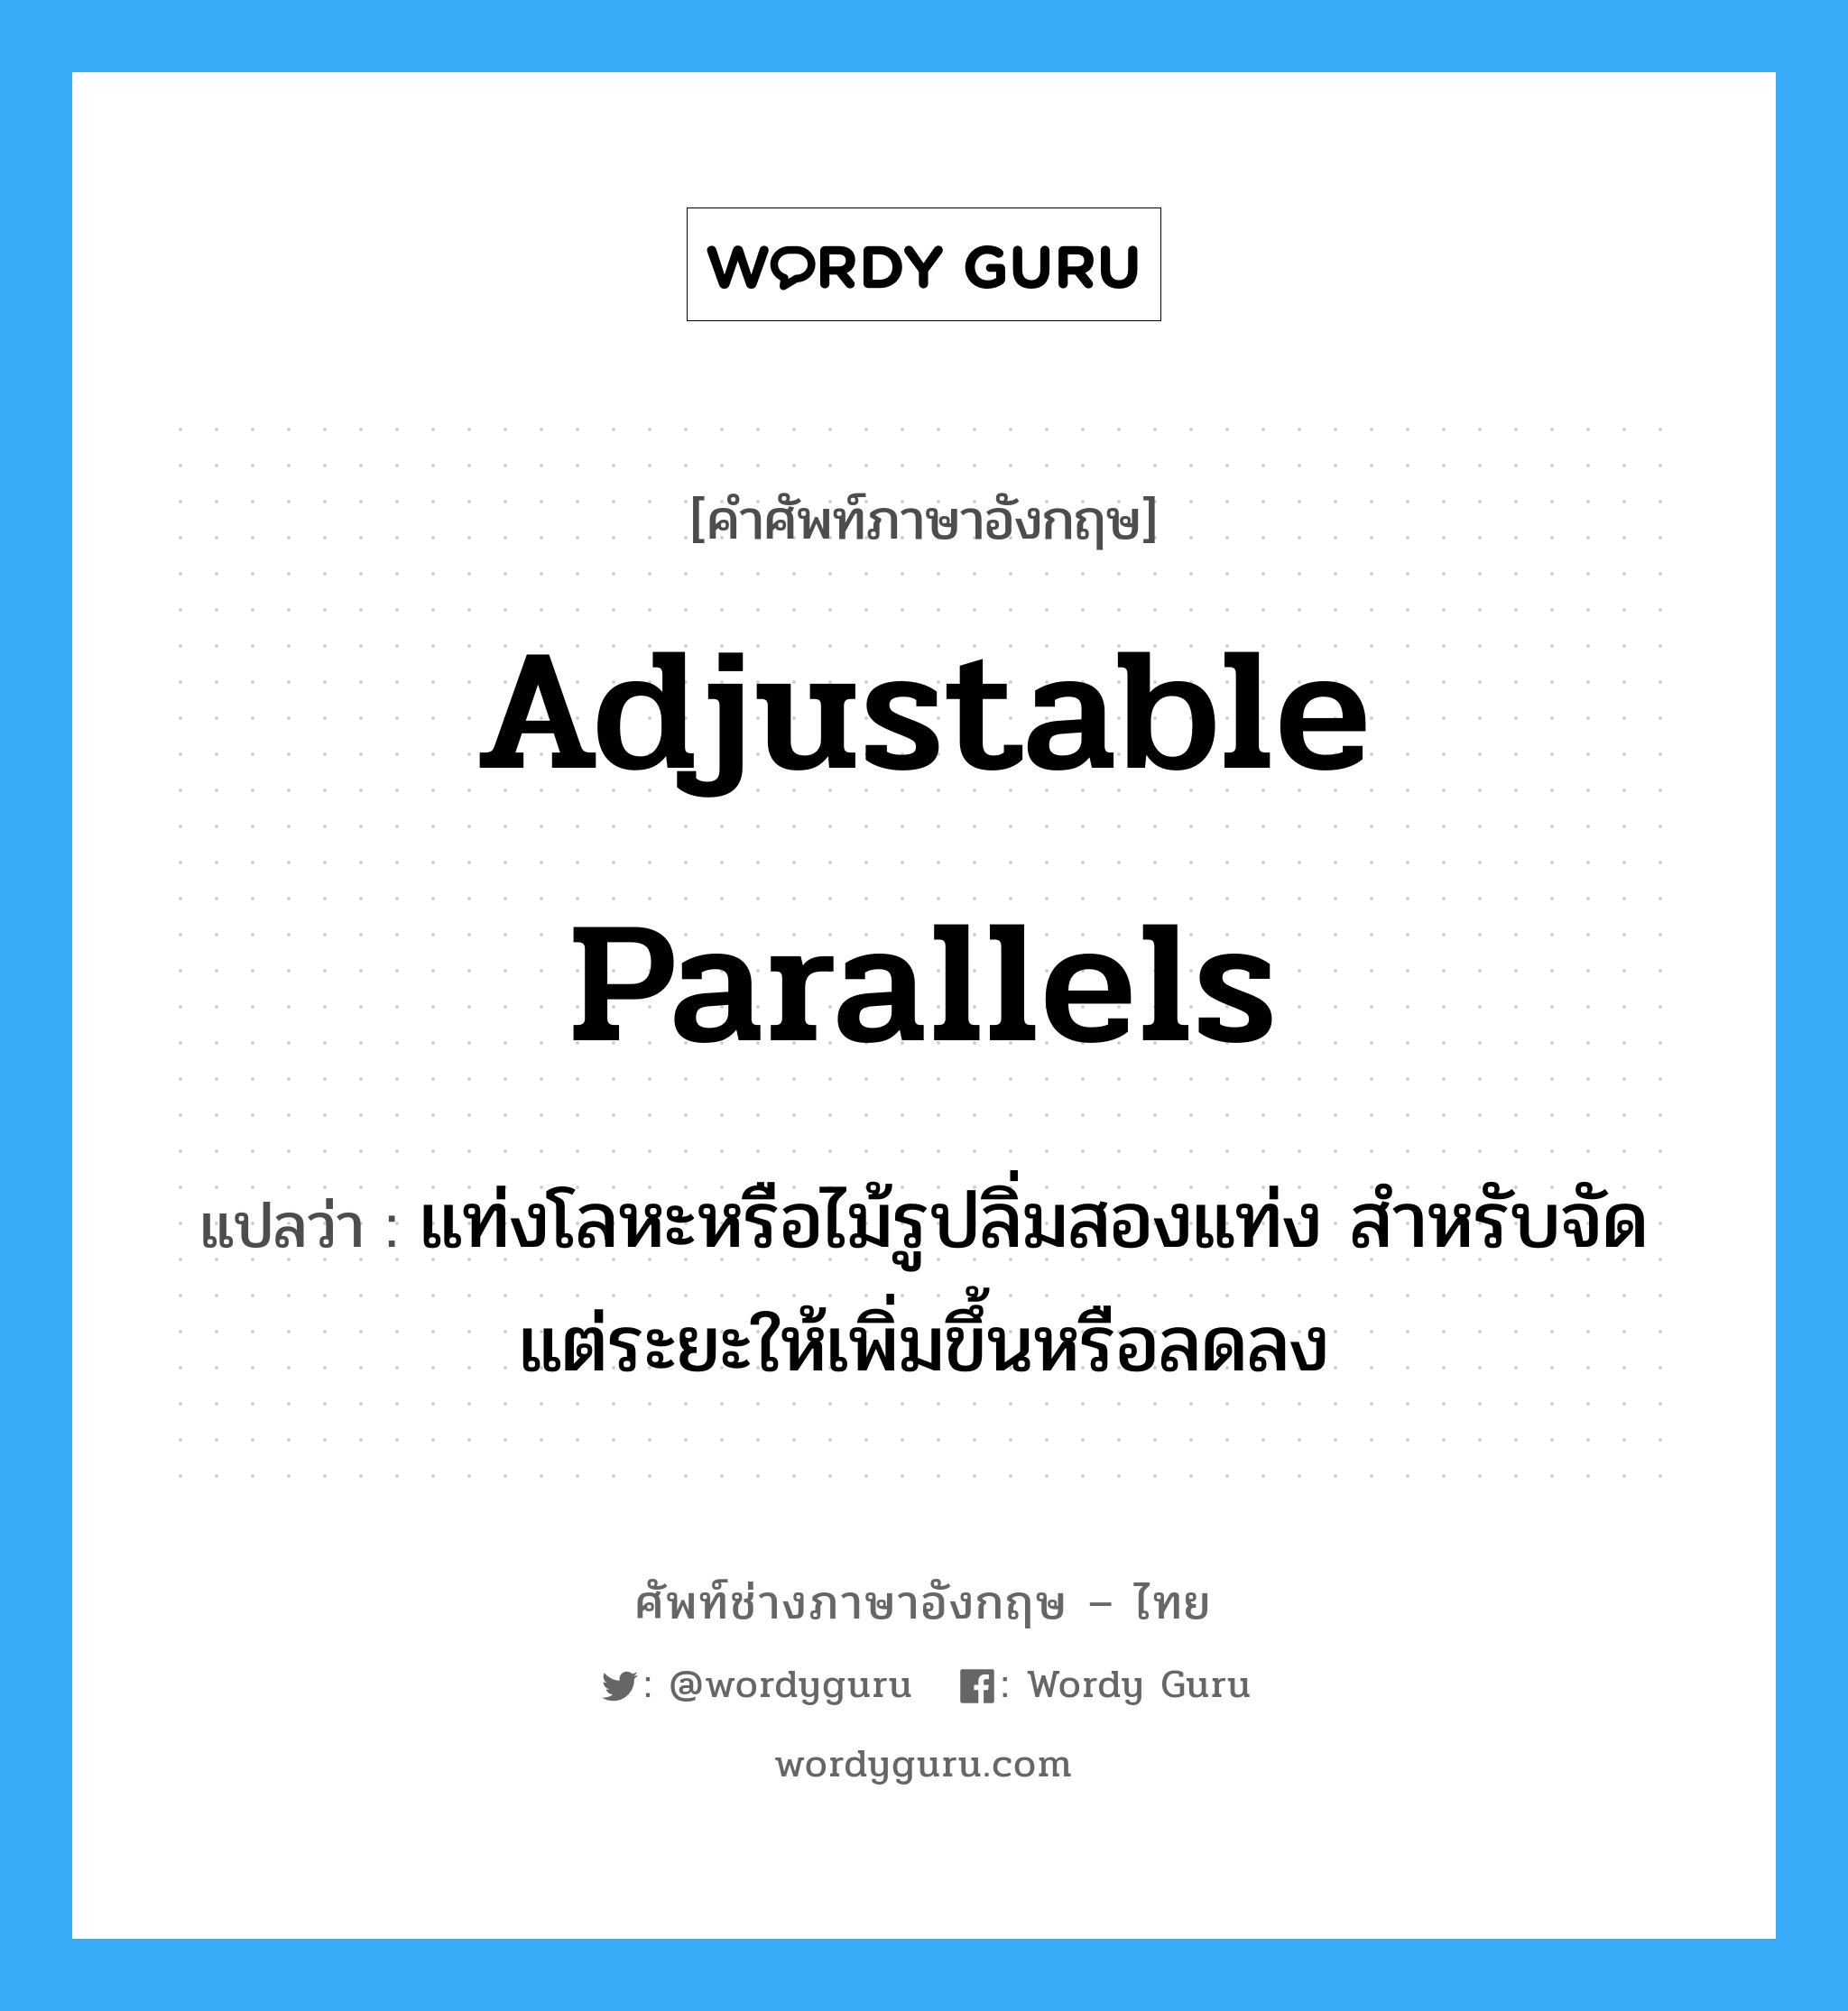 adjustable parallels แปลว่า?, คำศัพท์ช่างภาษาอังกฤษ - ไทย adjustable parallels คำศัพท์ภาษาอังกฤษ adjustable parallels แปลว่า แท่งโลหะหรือไม้รูปลิ่มสองแท่ง สำหรับจัดแต่ระยะให้เพิ่มขึ้นหรือลดลง